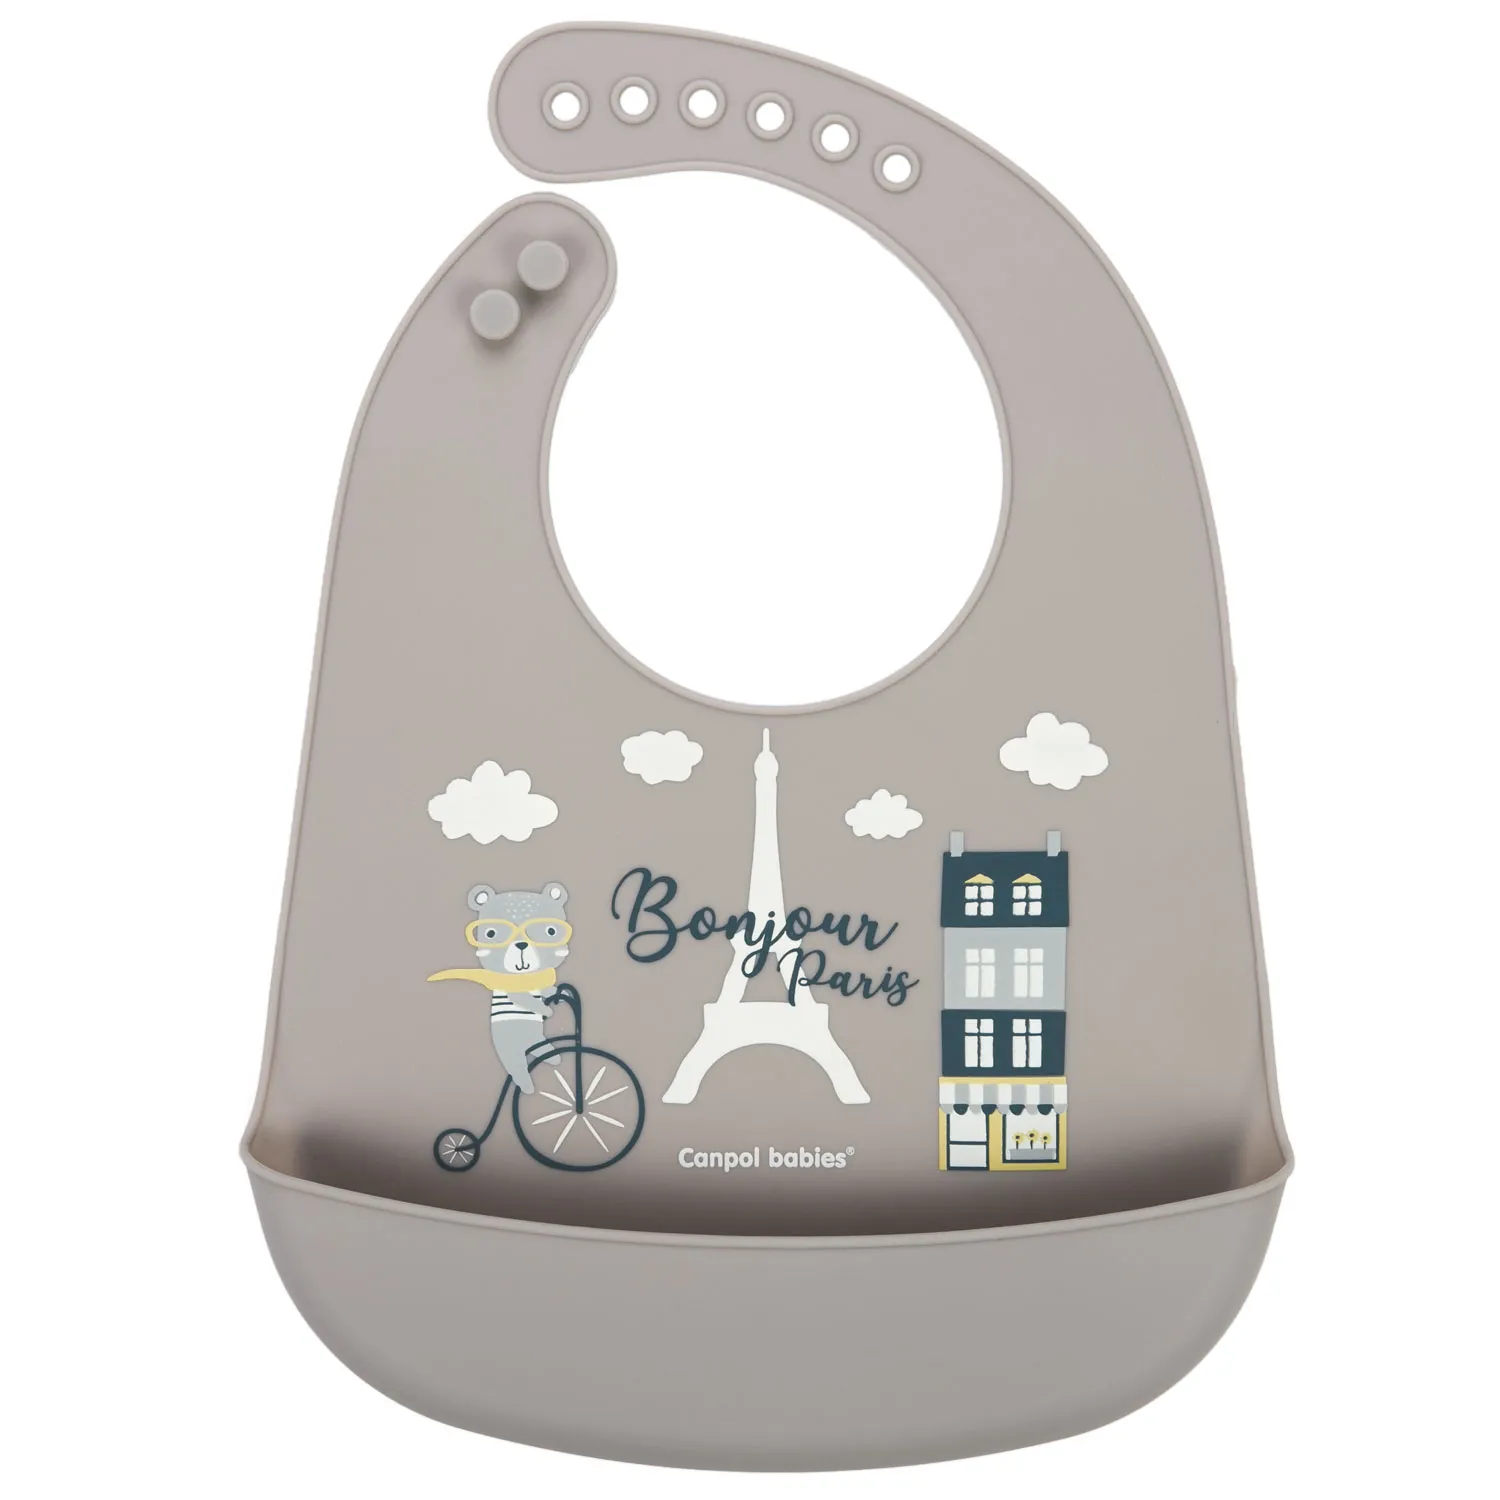 Canpol babies Bonjour Paris śliniak zmywalny z kieszenią beżowy, 1 szt.